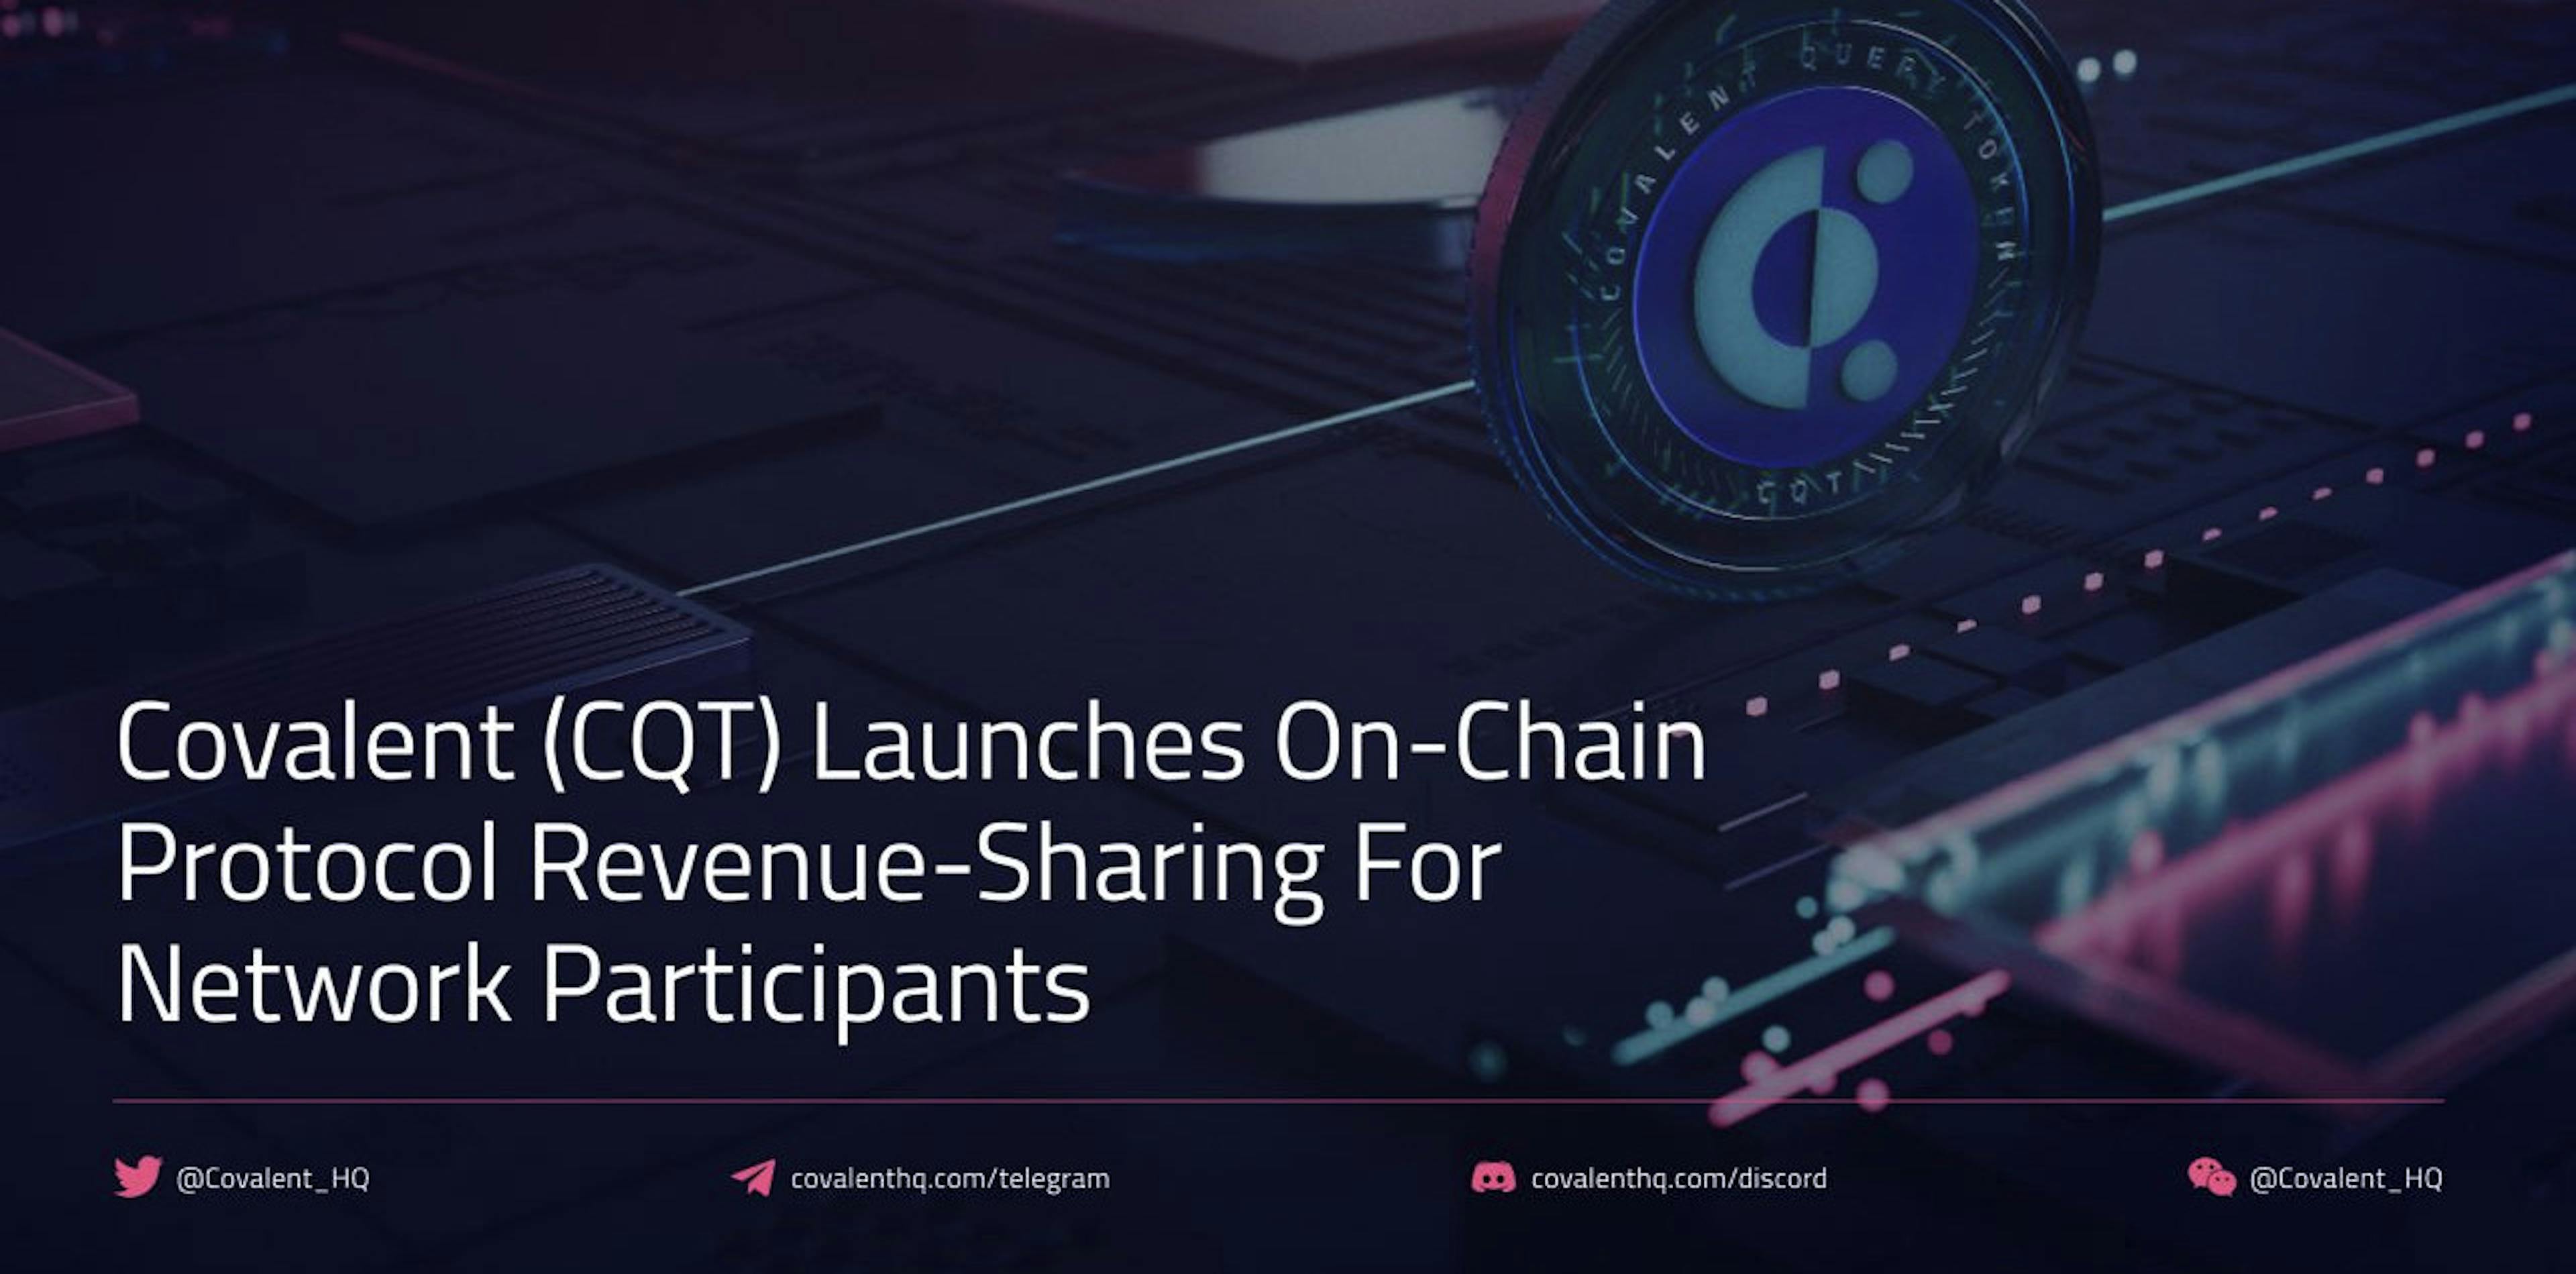 featured image - Covalent (CQT) lance un protocole de partage des revenus en chaîne pour les participants au réseau